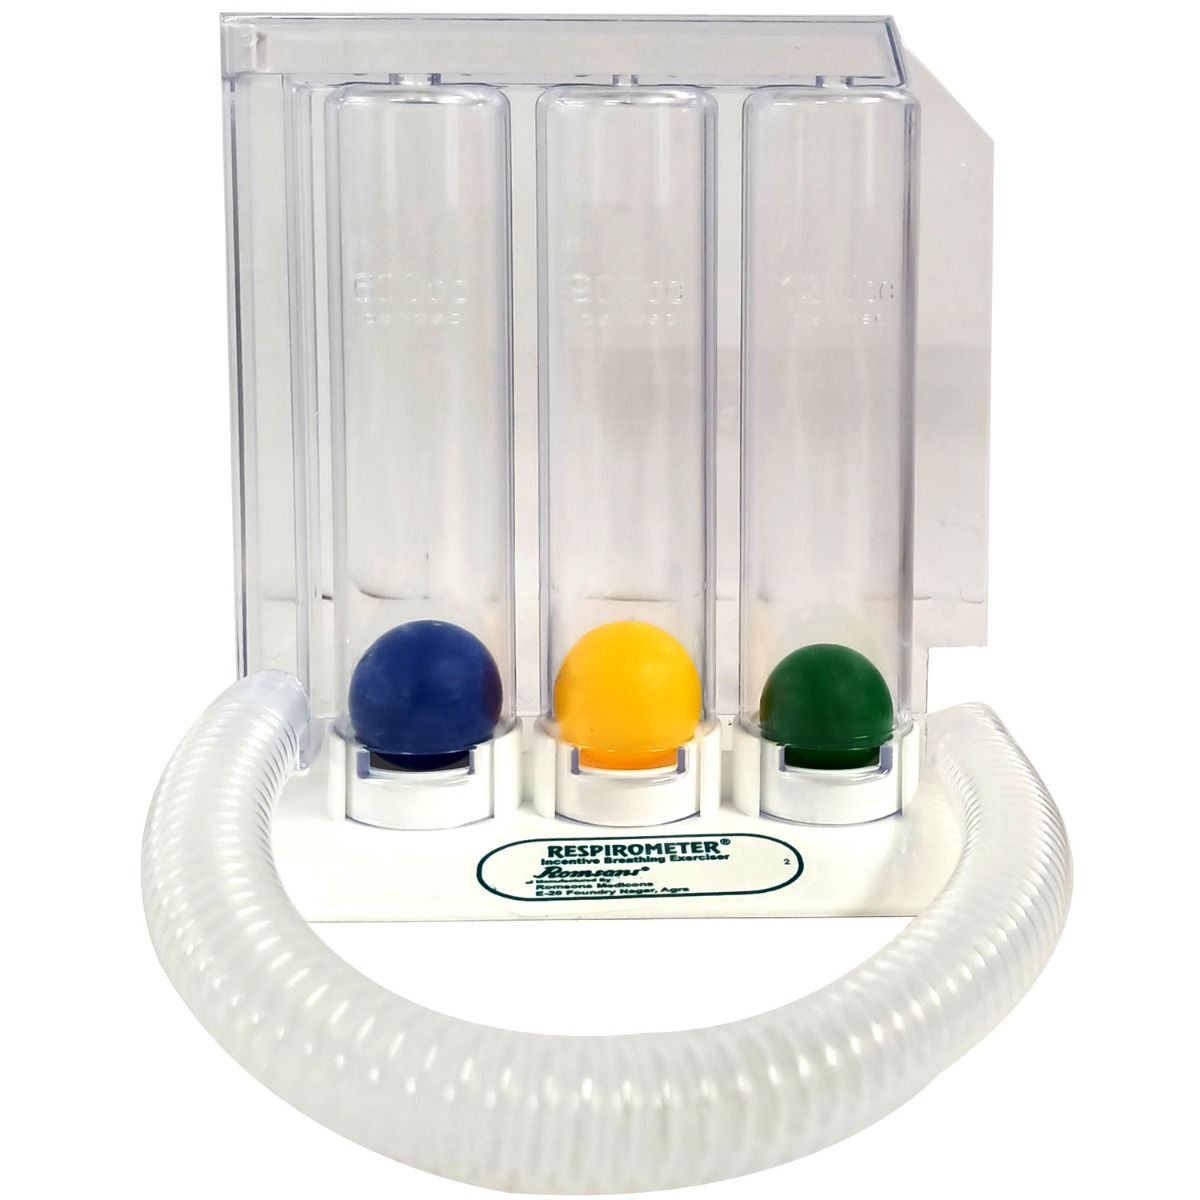 Romsons Respirometer SH-6082, 1 Count, Pack of 1 